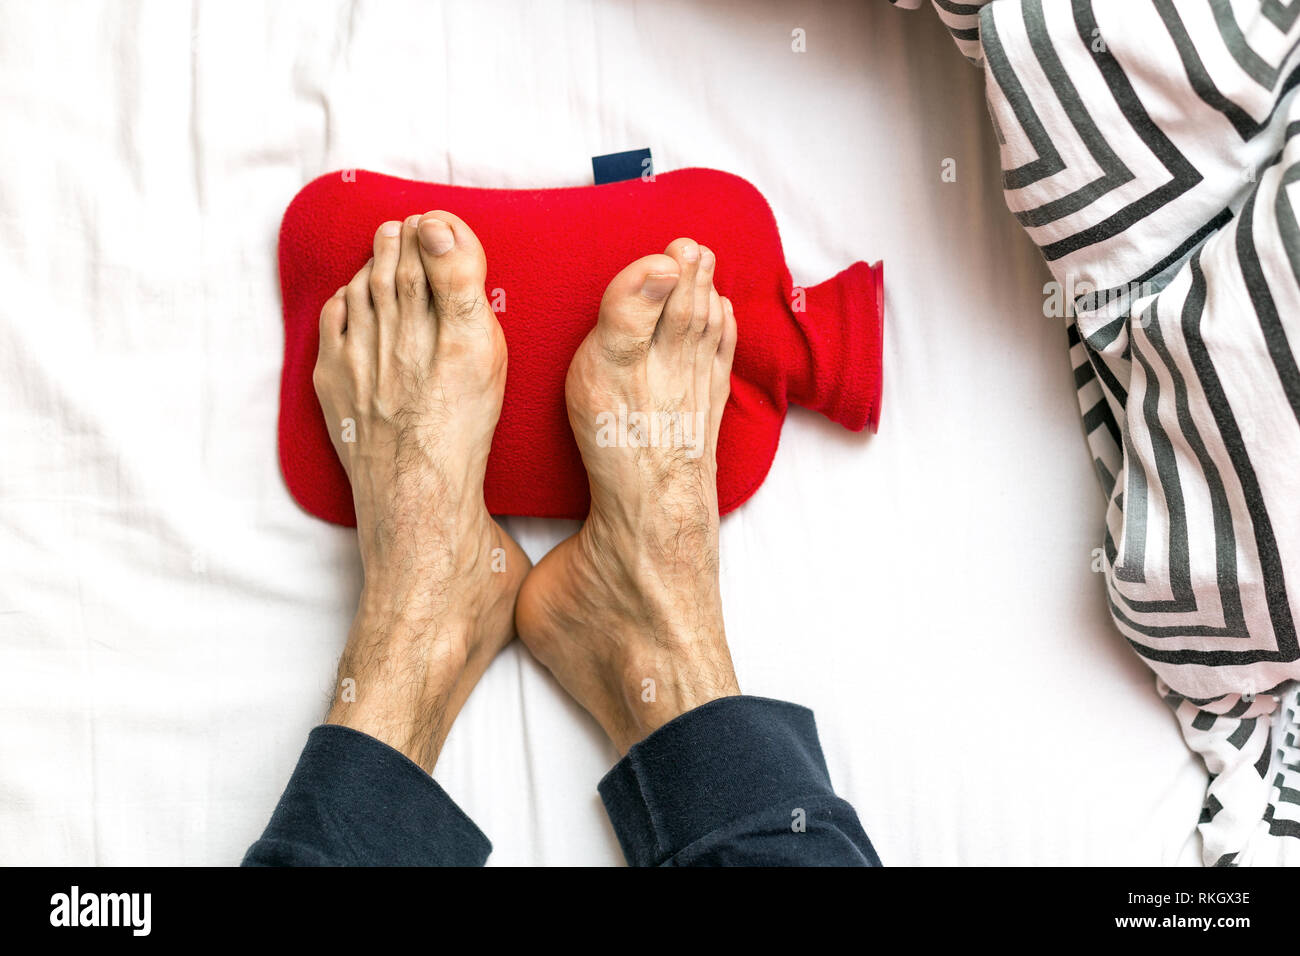 Mann mit kalte Füße im Bett auf eine rote Wärmflasche. Erwärmung der kalte  Füße Stockfotografie - Alamy